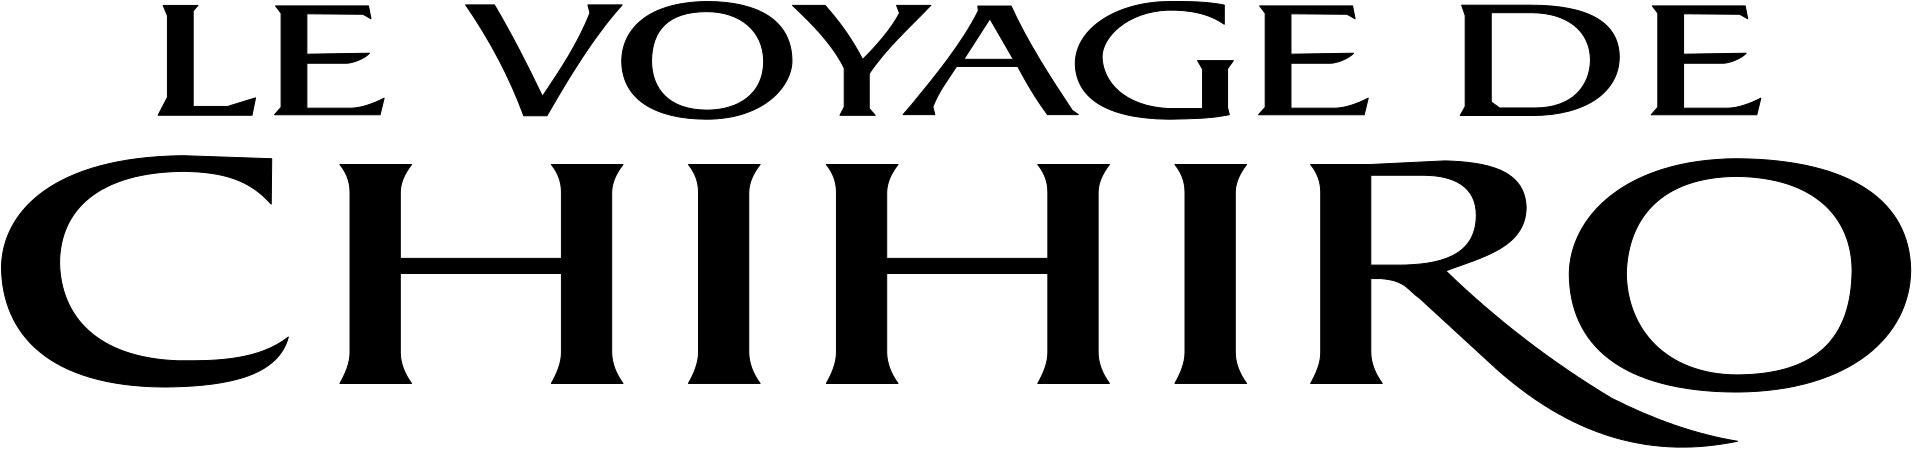 Spirited Away Logo Fr - Spirited Away Logo Font (1912x449)